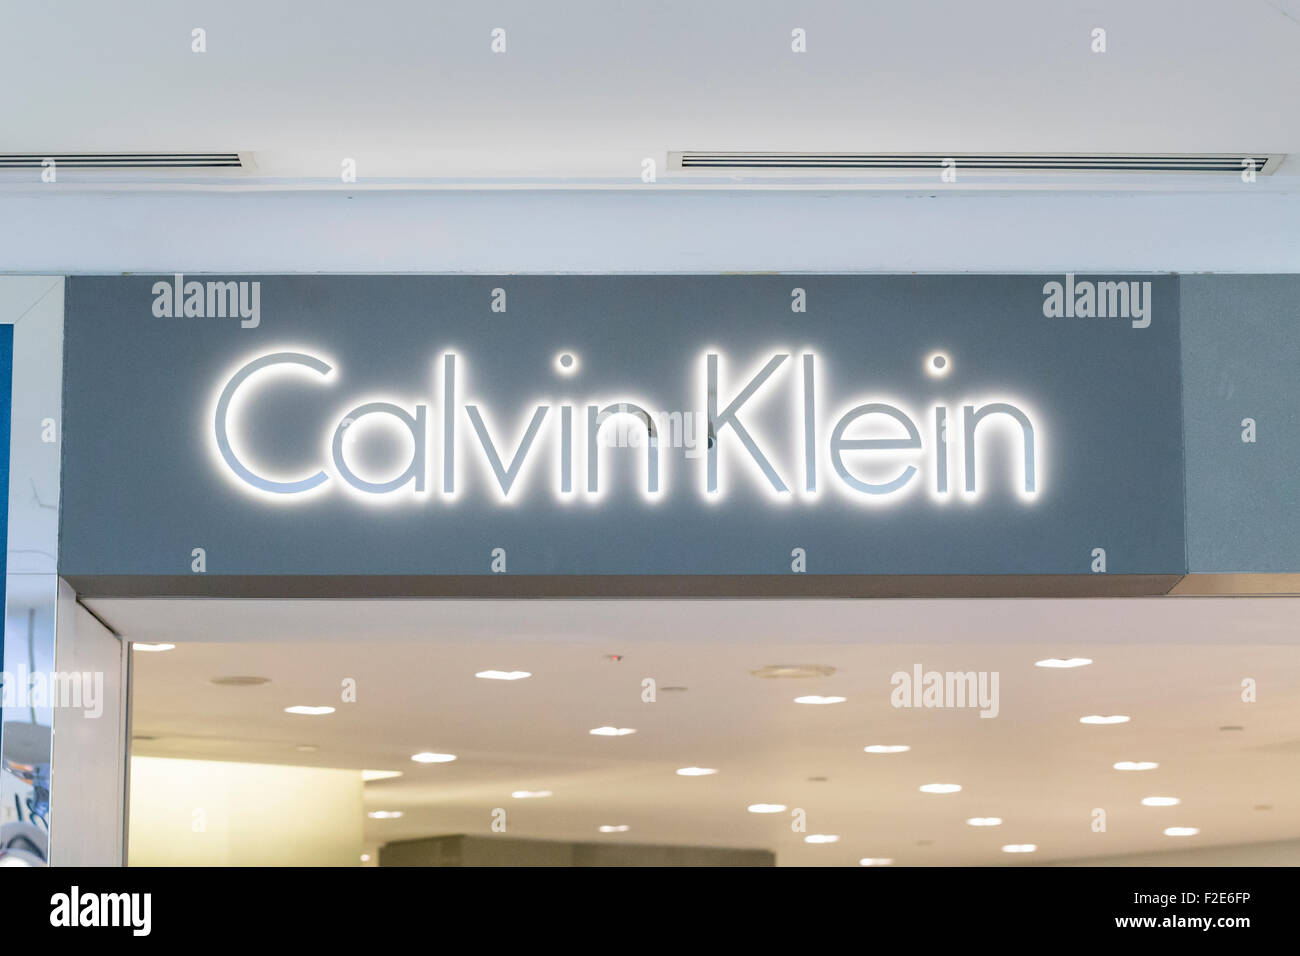 Calvin Klein Shop Sign Stock Photos & Calvin Klein Shop Sign Stock ...